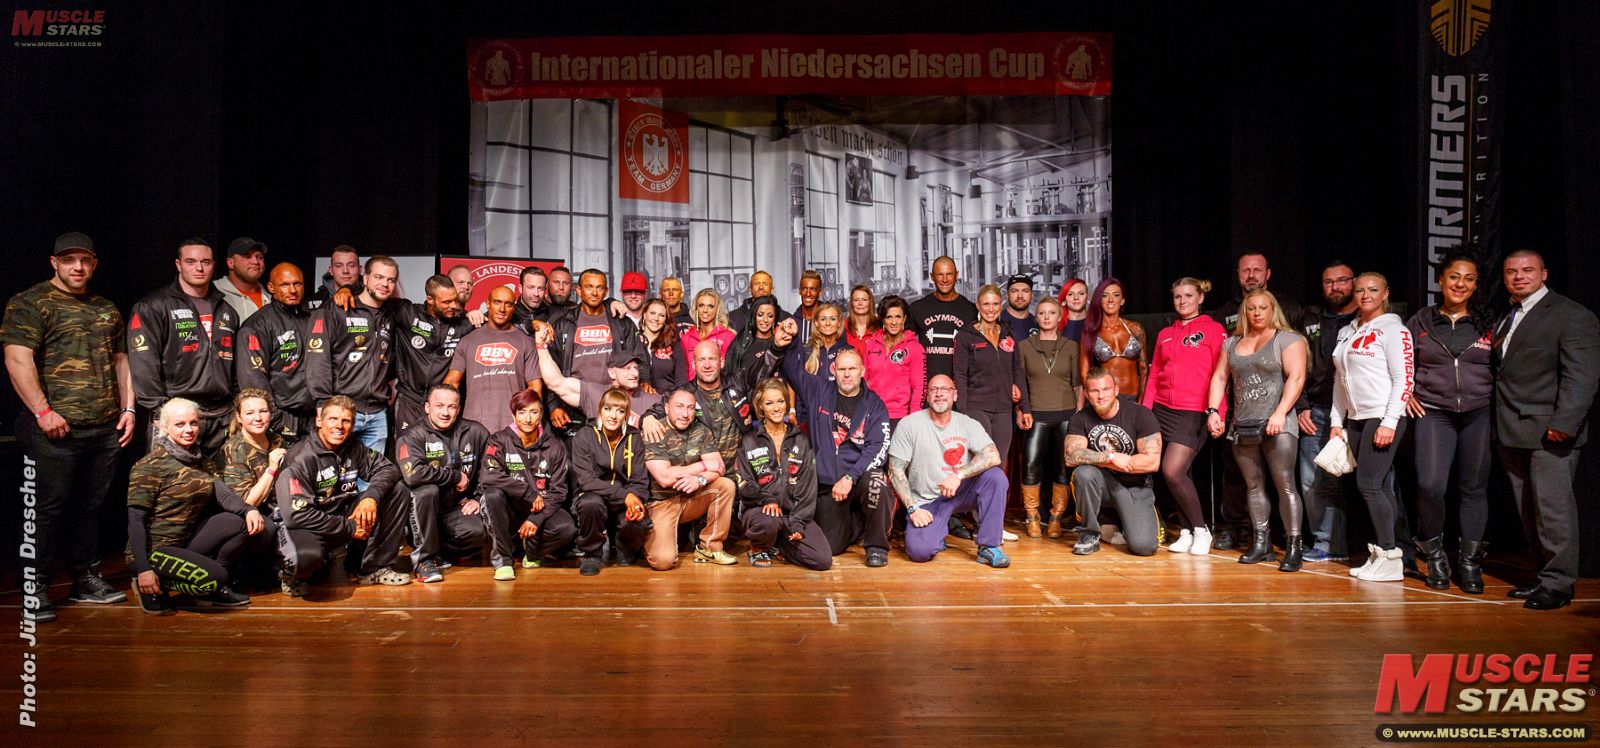 2016 11 Dbfv Niedersachsen Cup 1530 Pano